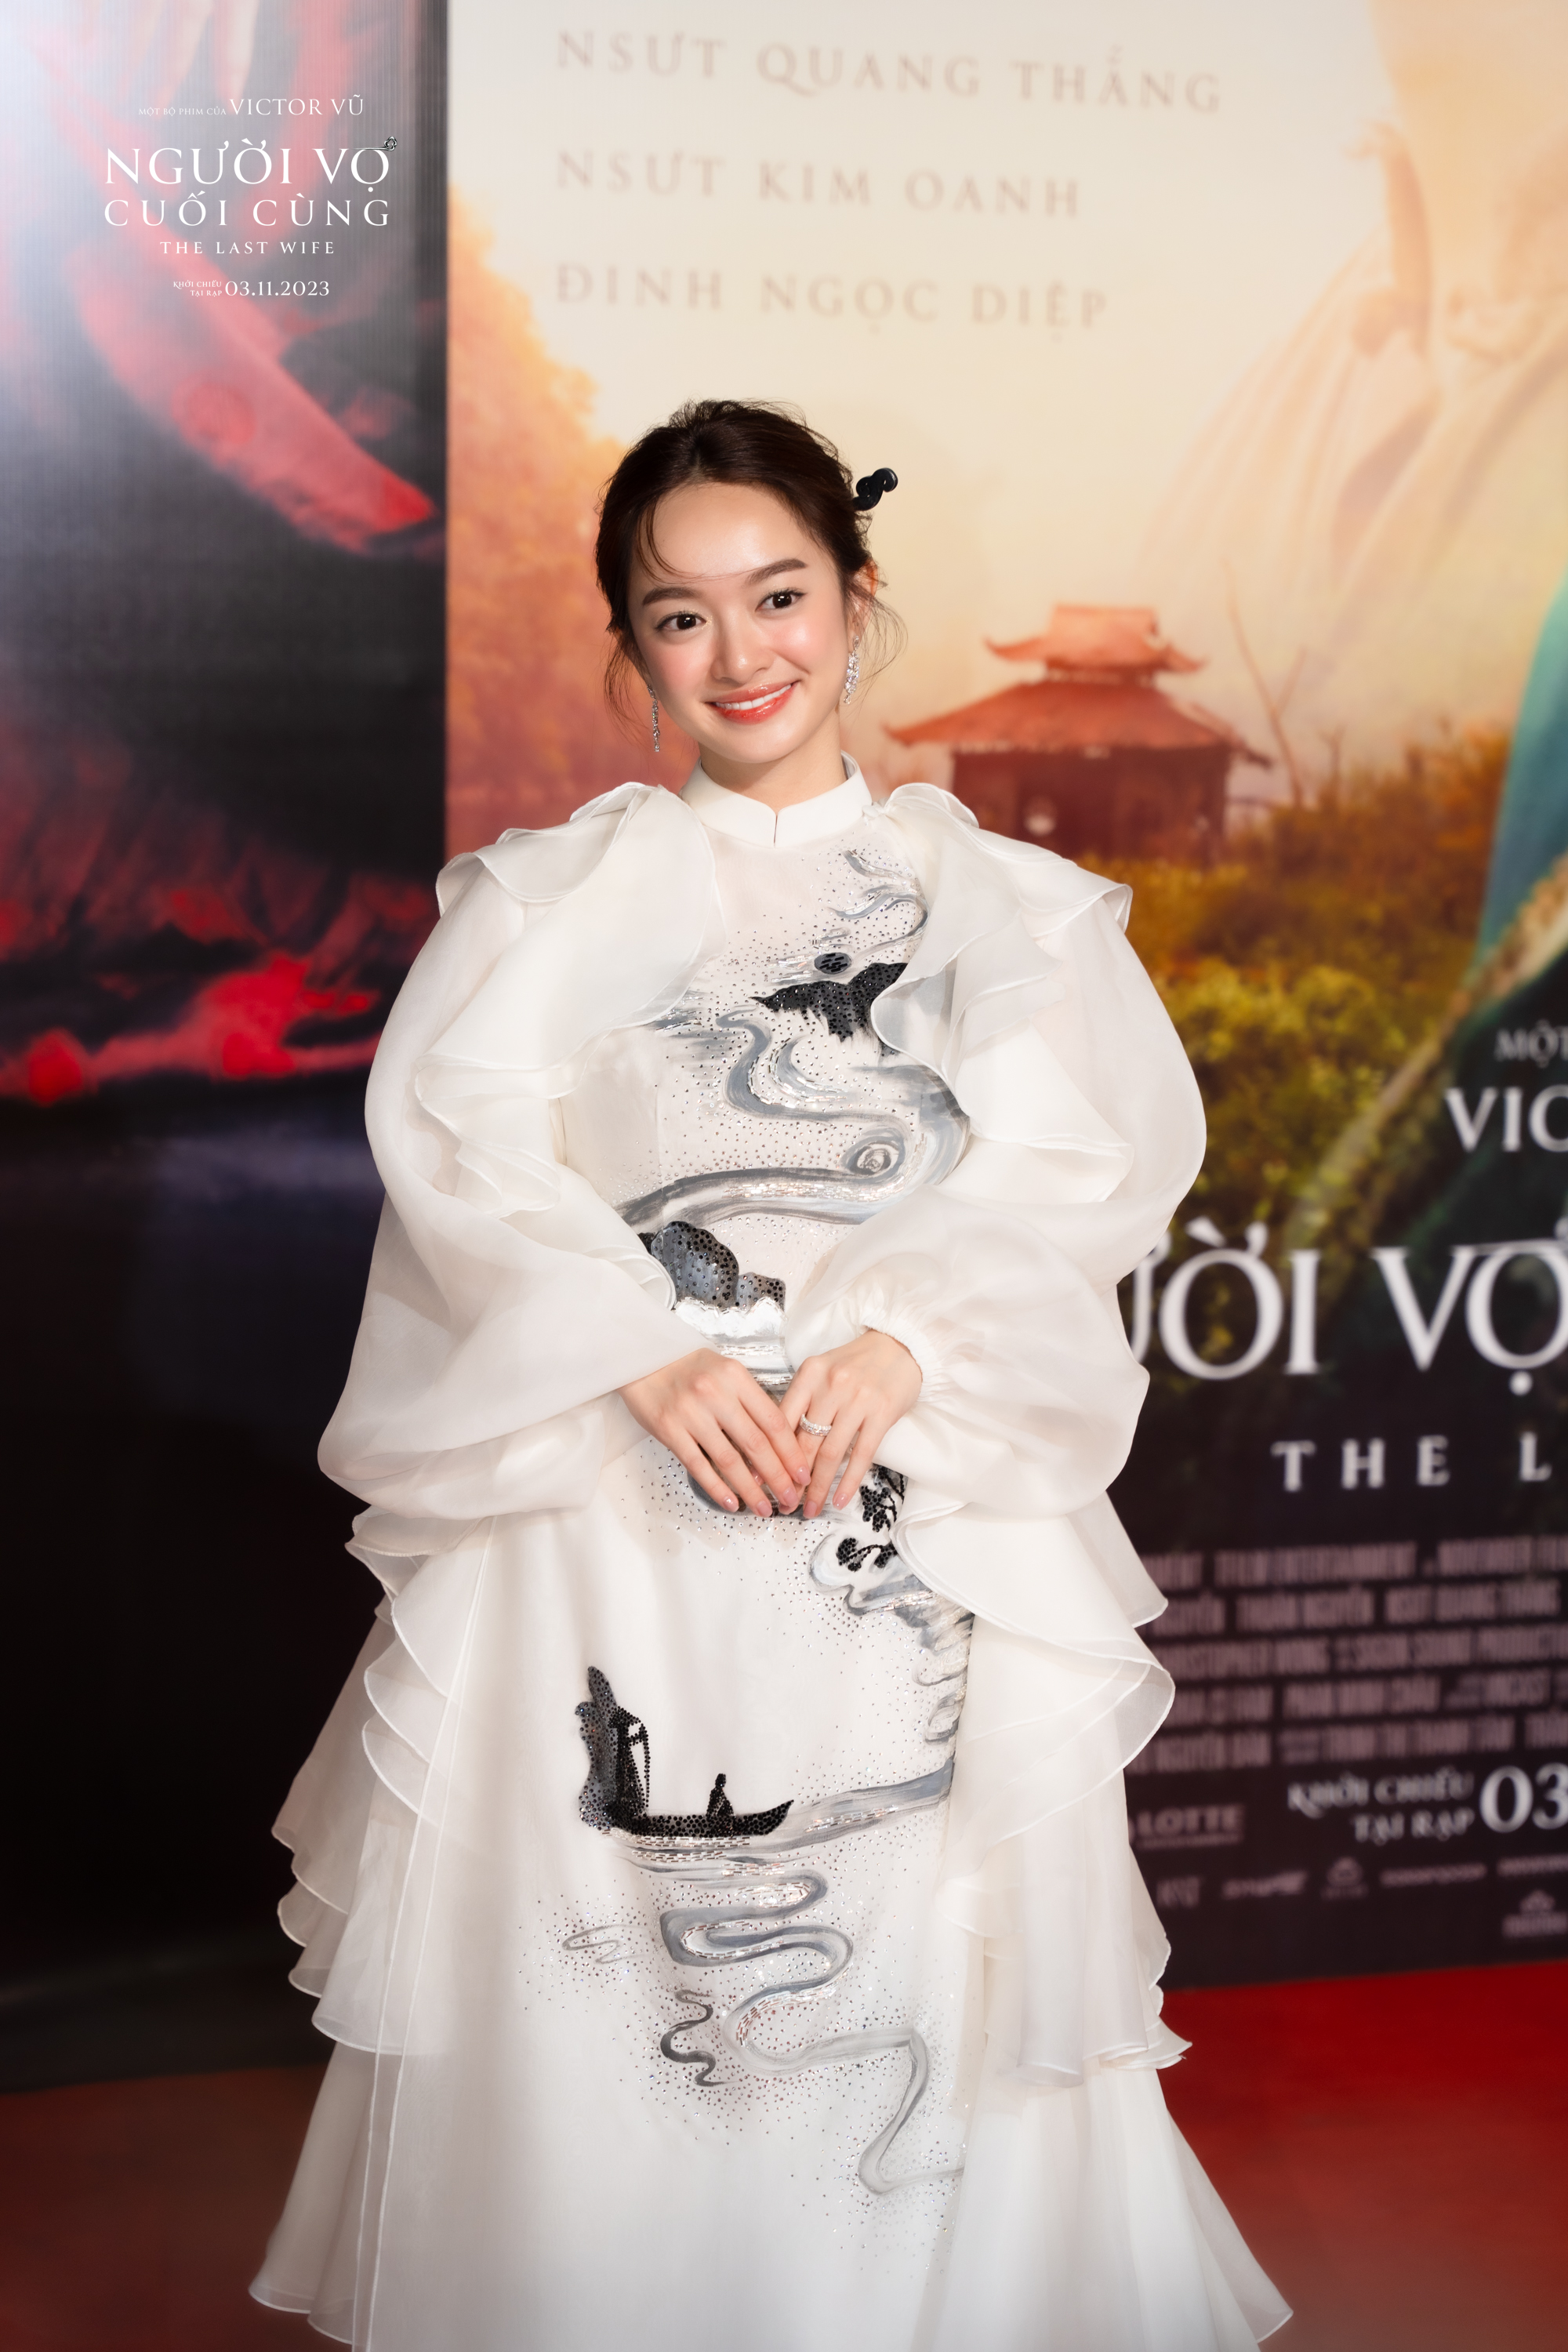 Showbiz Việt tề tựu chúc mừng phim mới của Victor Vũ - Ảnh 3.